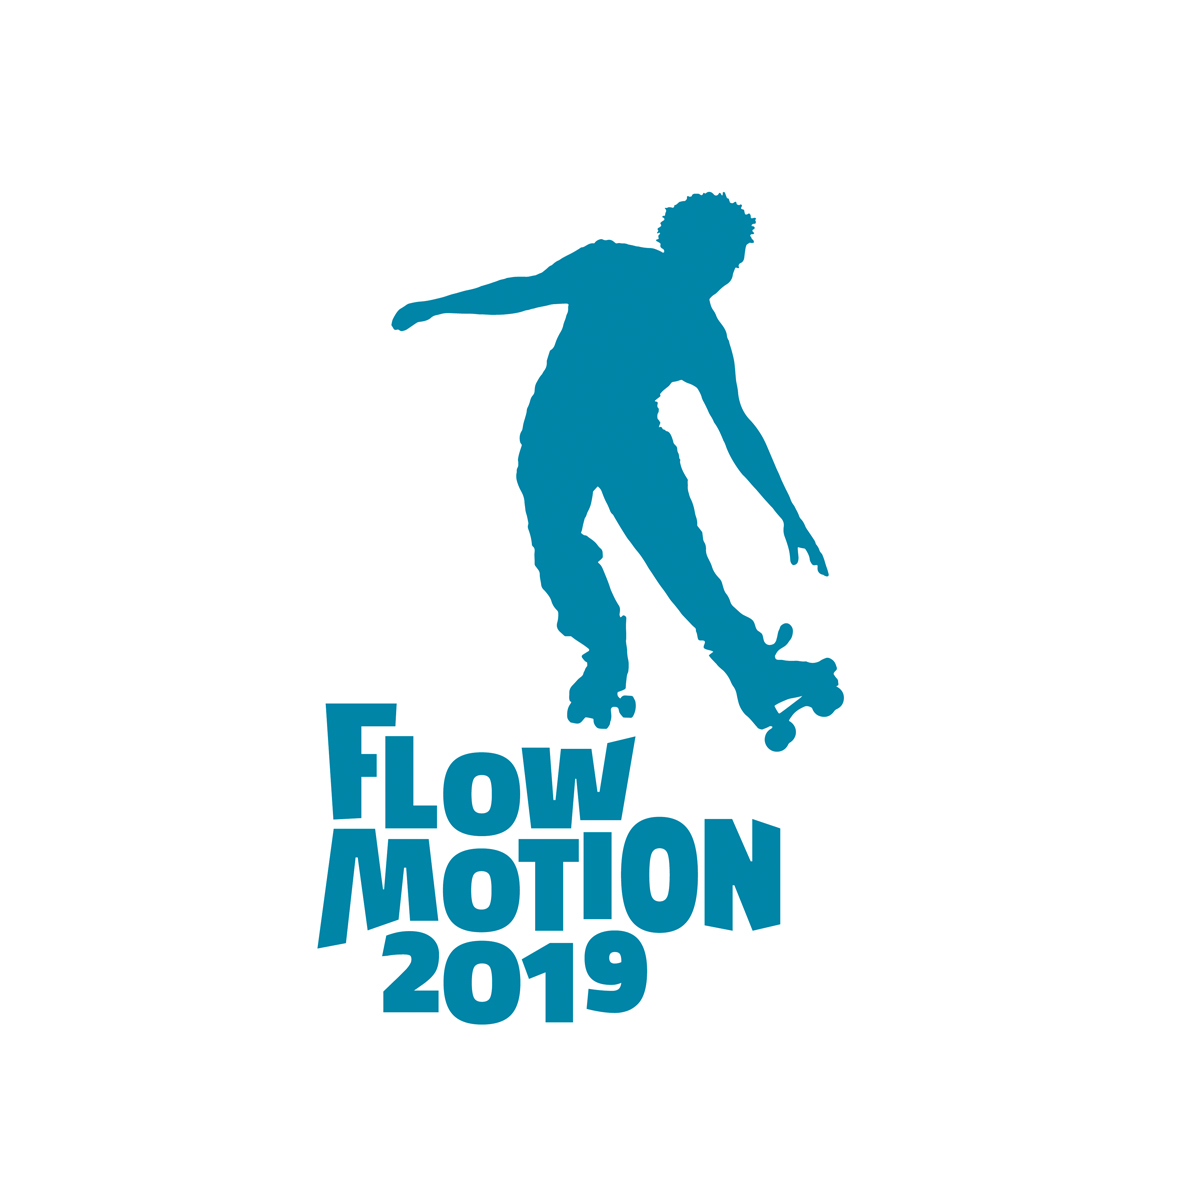 Es Quint - Logo - Flow Motion 2019